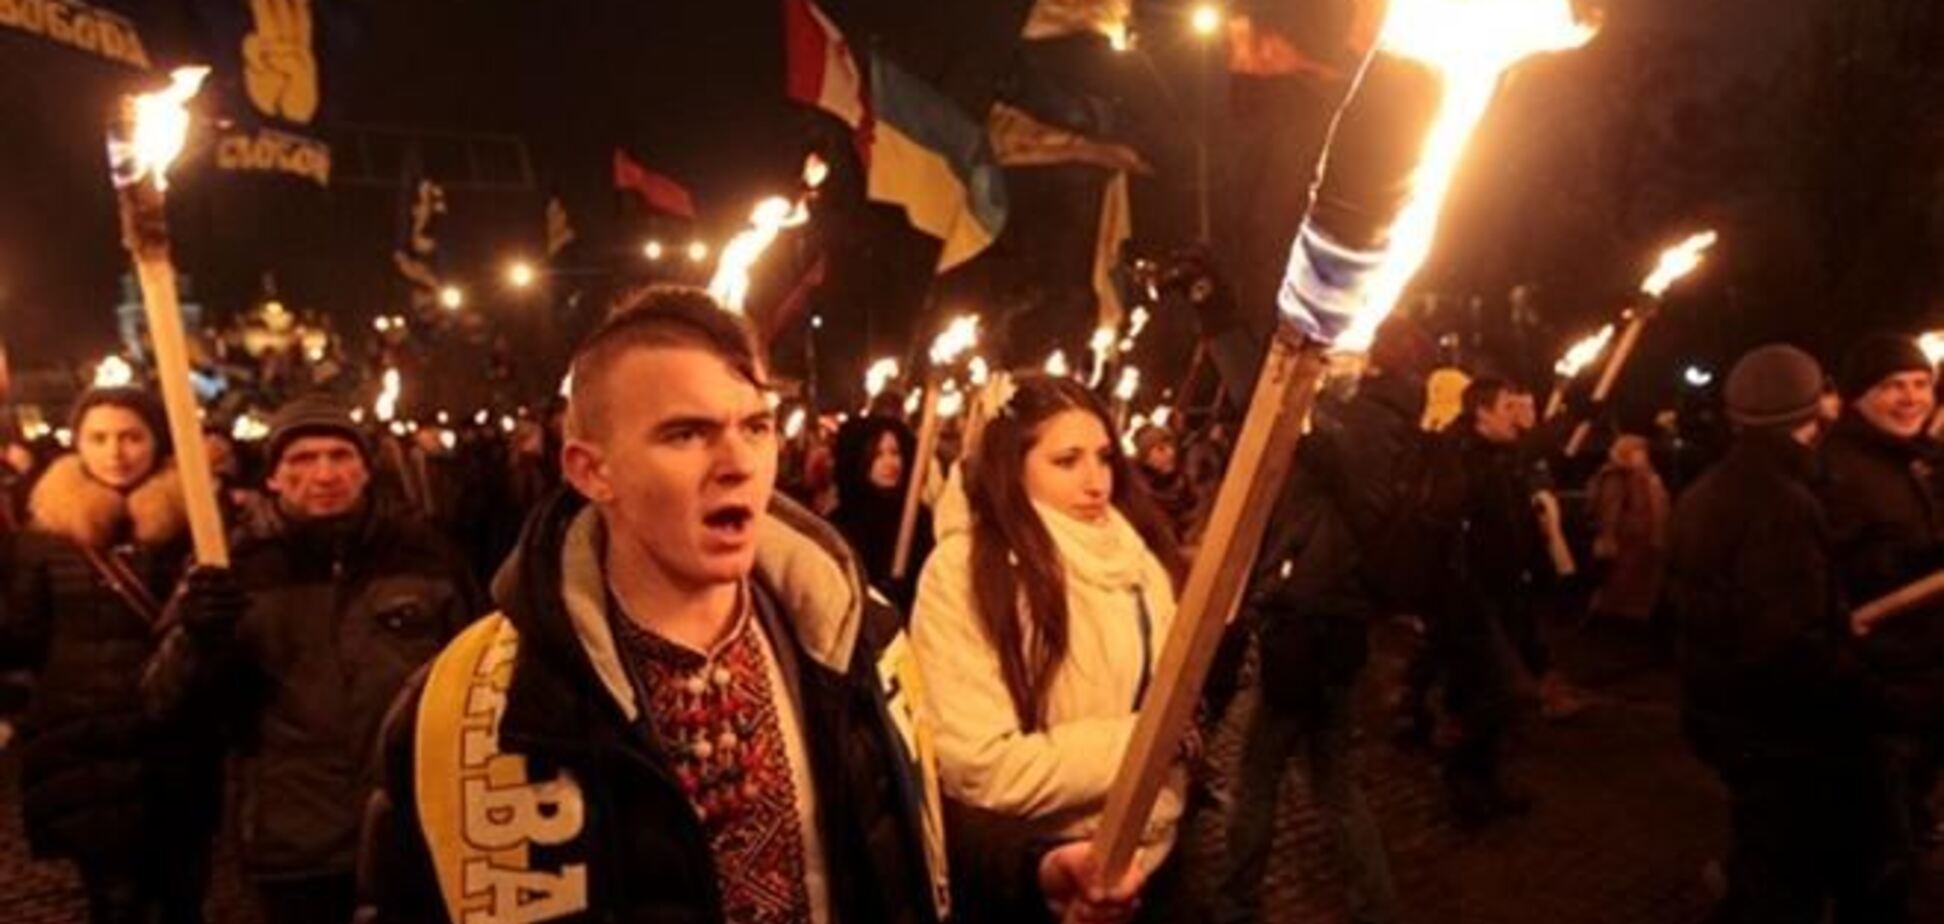 Колесниченко: на Евромайдане внедряются неонацистские идеи